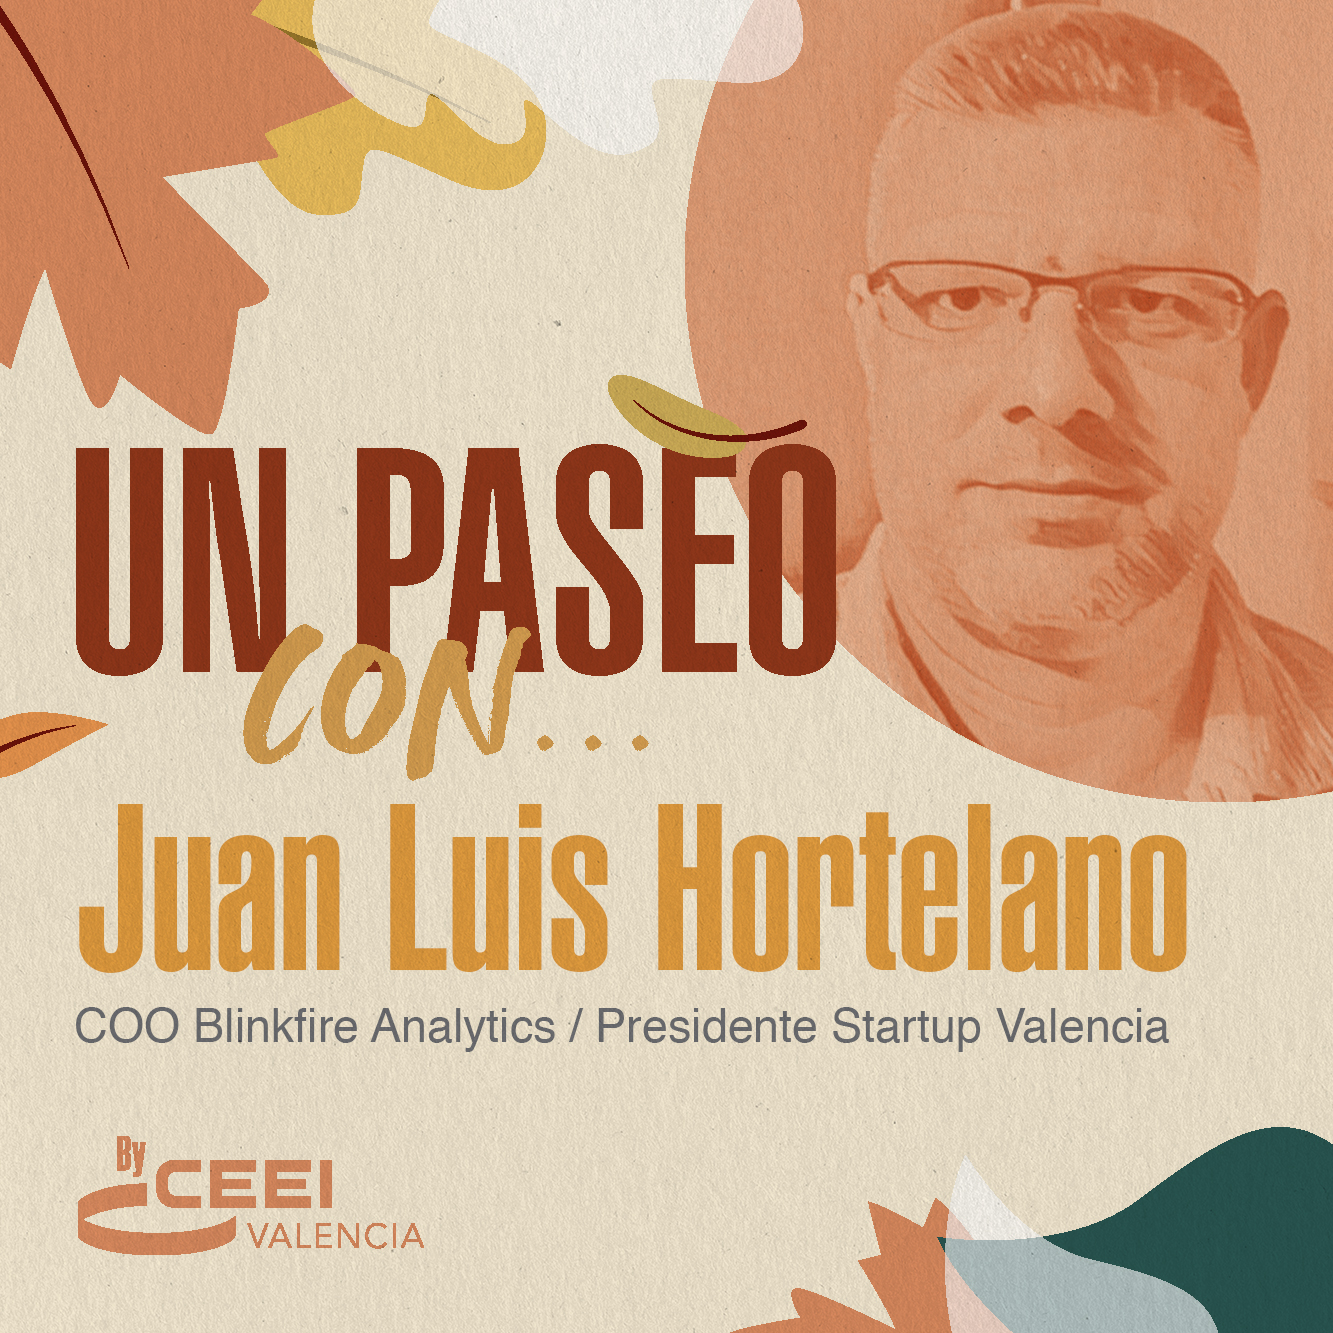 Un paseo, virtual, con Juan Luis Hortelano cofundador de Blinkfire Analytics y presidente de Startup Valencia